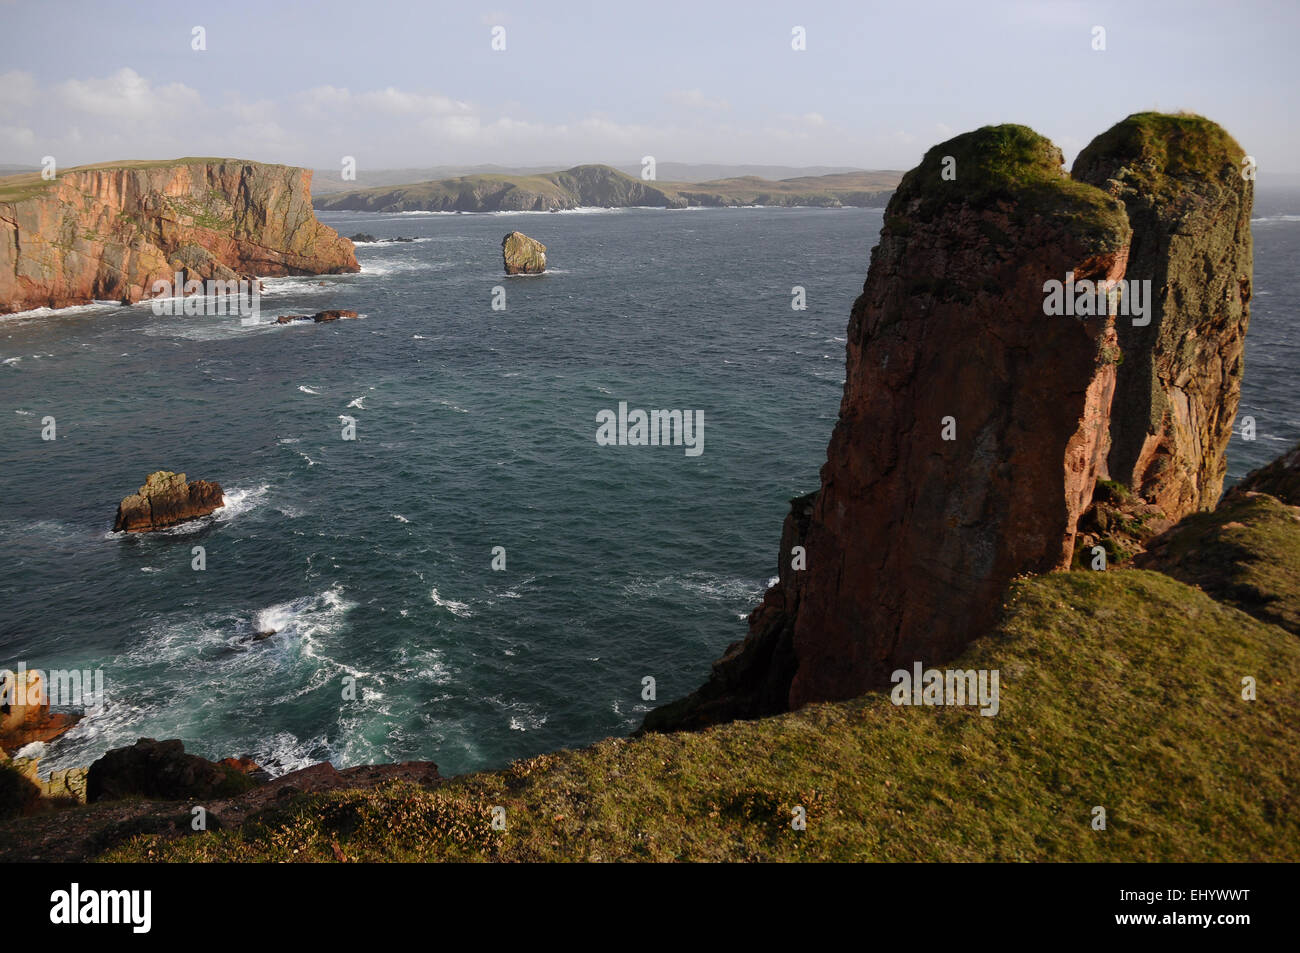 Escocia, Islas Shetland, braewick, la península, la costa oeste del Atlántico, acantilados, mar, Gran Bretaña, Europa, Foto de stock